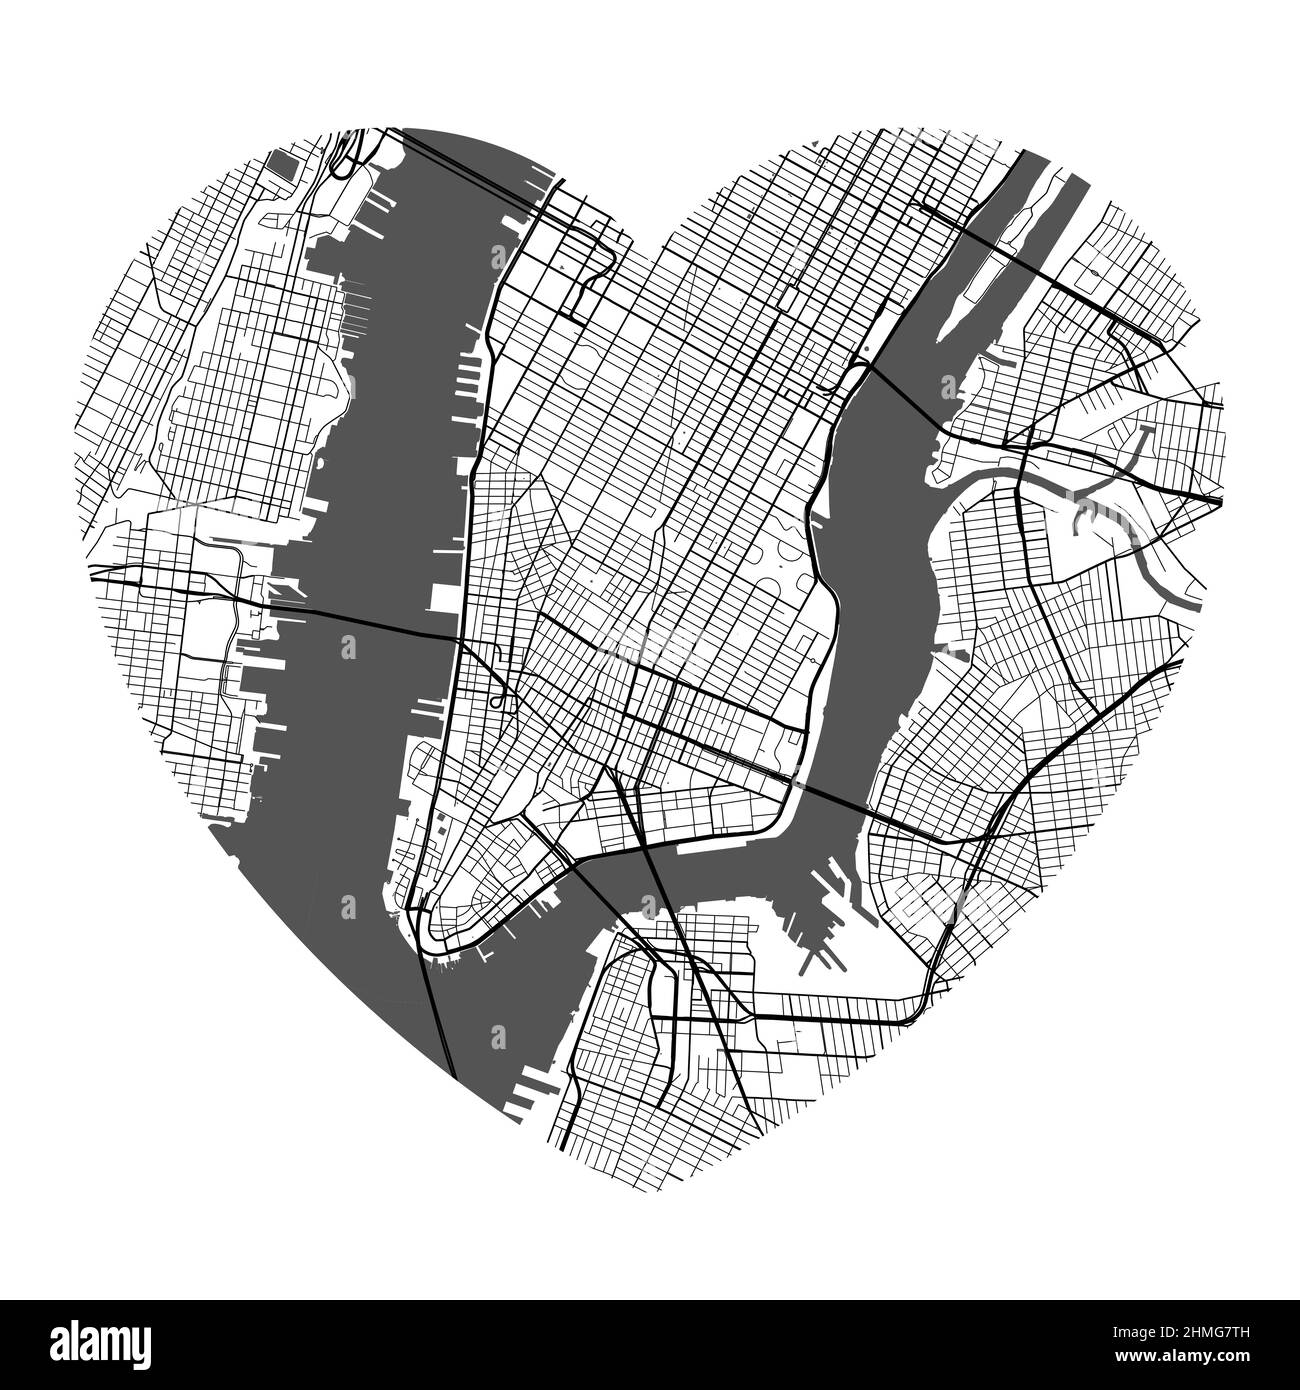 Mappa vettoriale a forma di cuore della città di New York. Illustrazione dei colori bianco e nero. Strade, strade, fiumi. Illustrazione Vettoriale